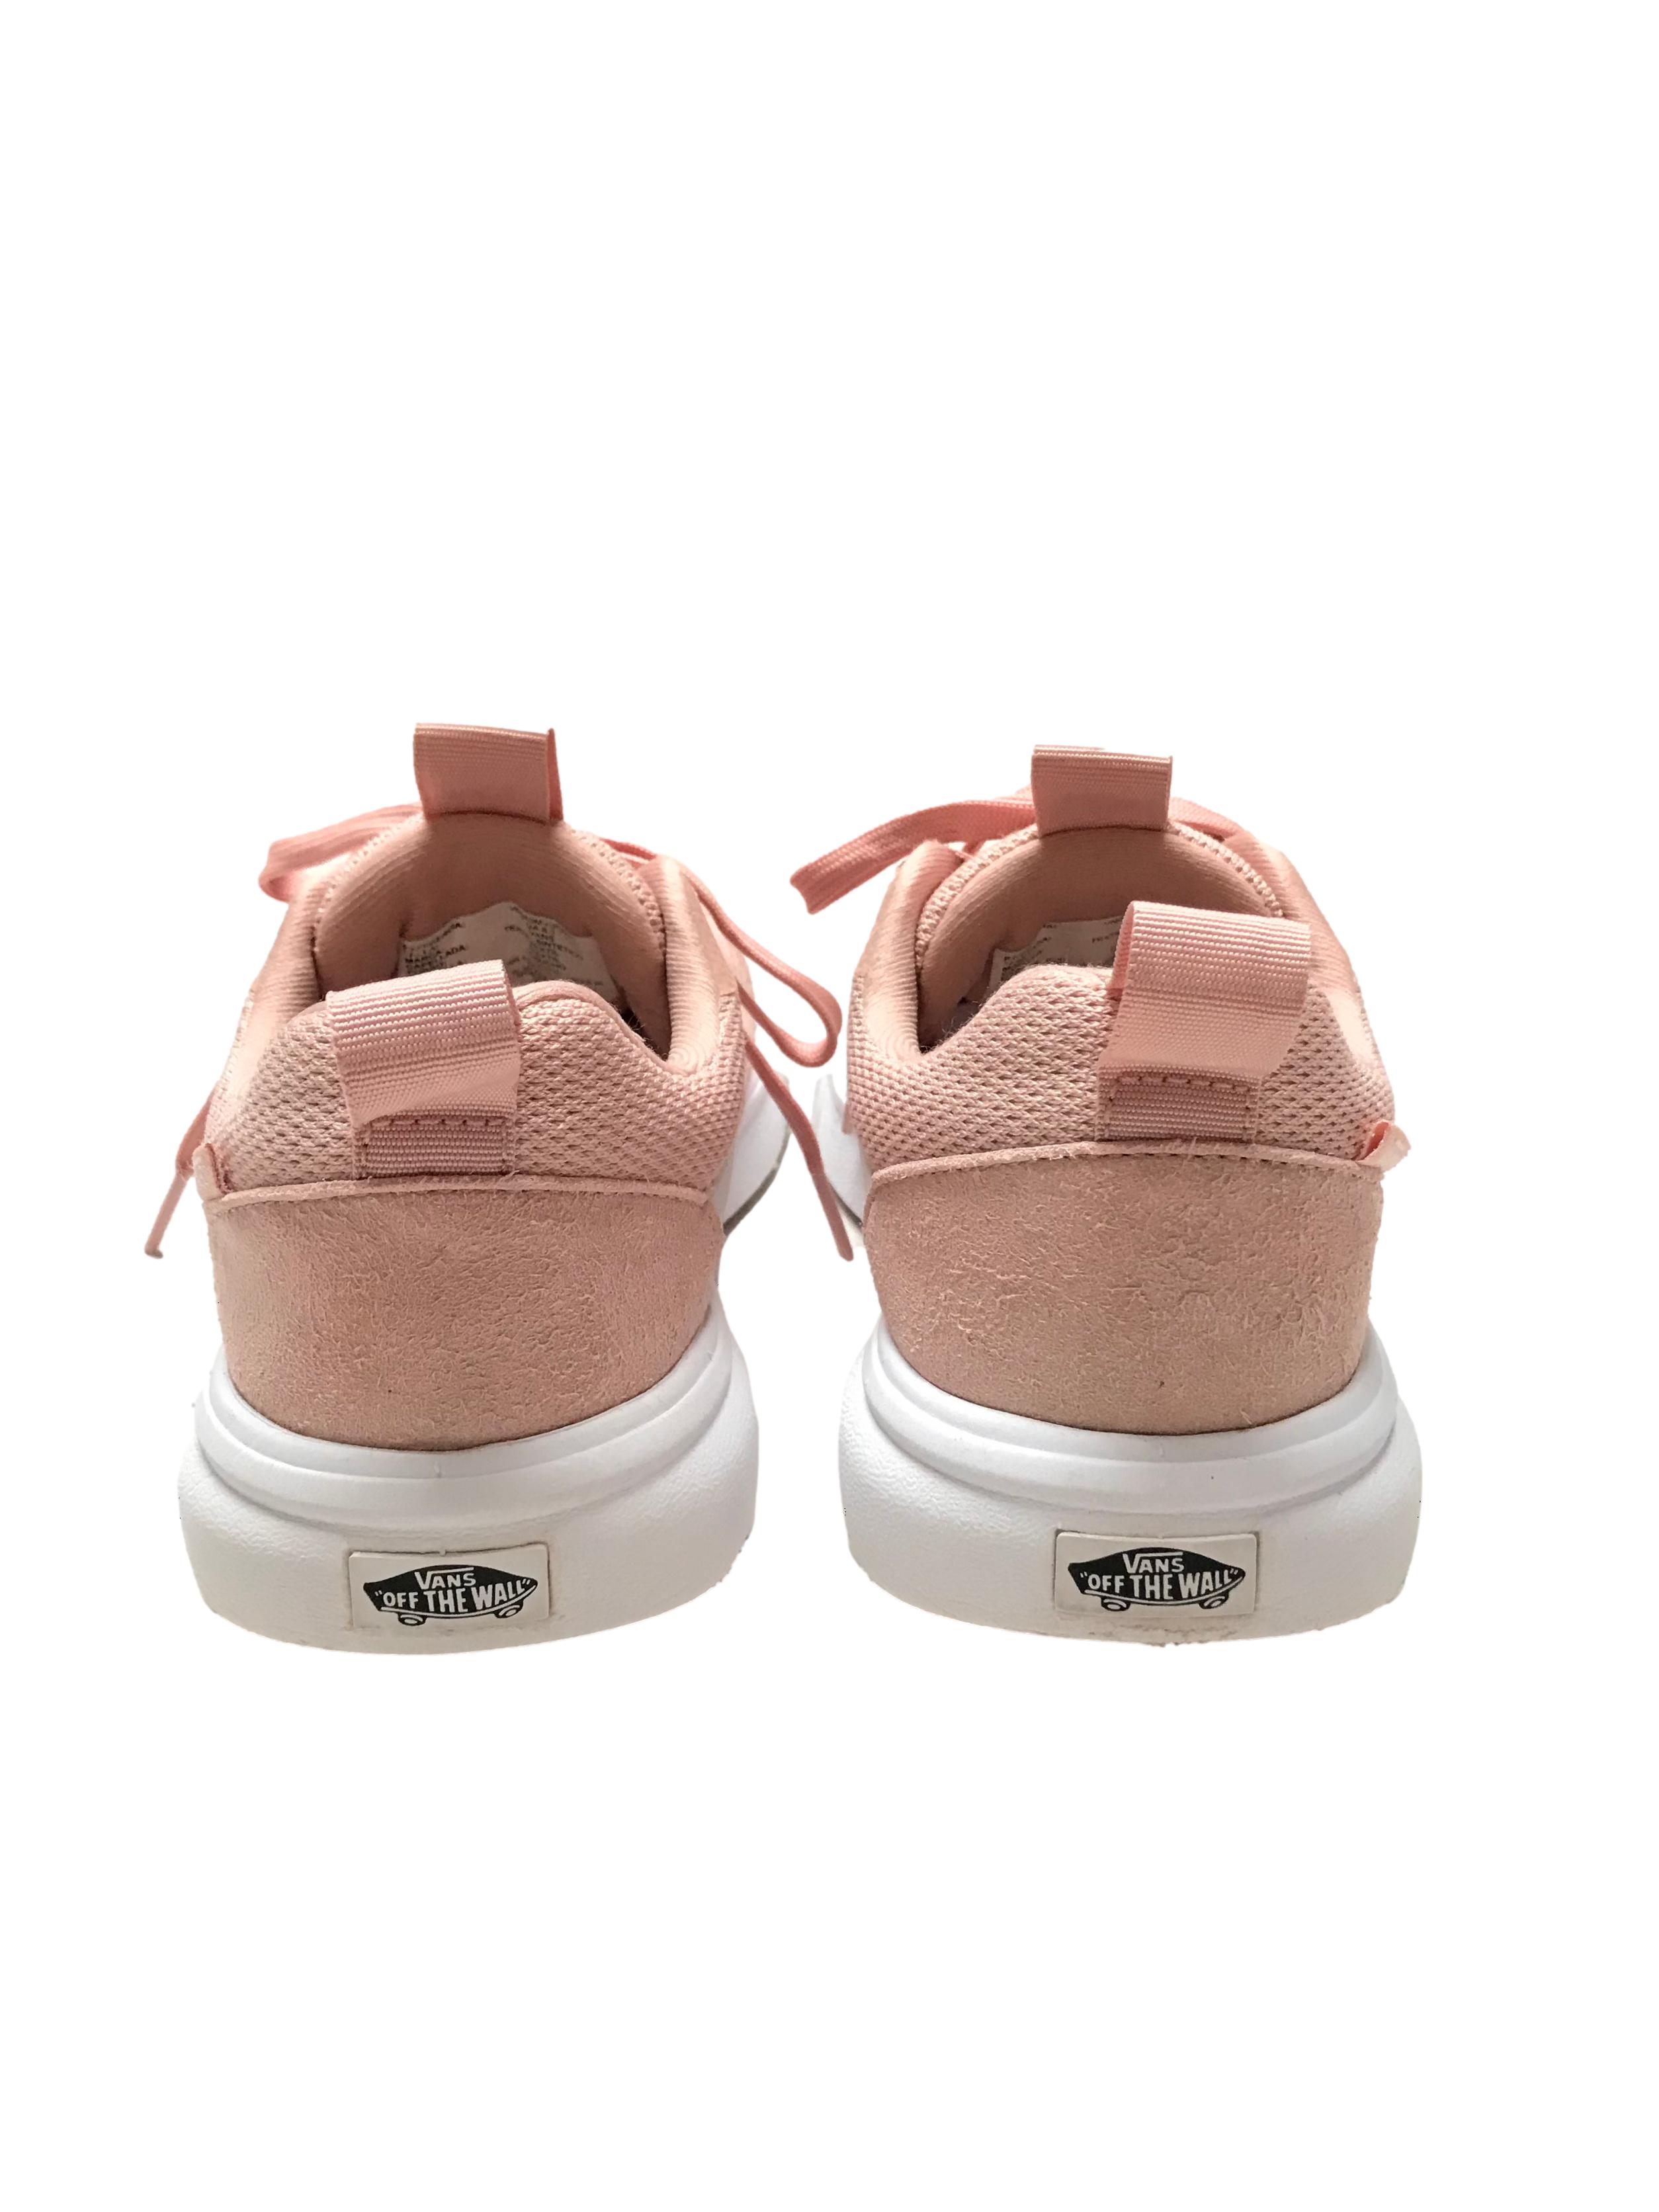 Zapatillas Vans Ultracush palo rosa y blanco. Estado 9/10. Precio original S/ 319